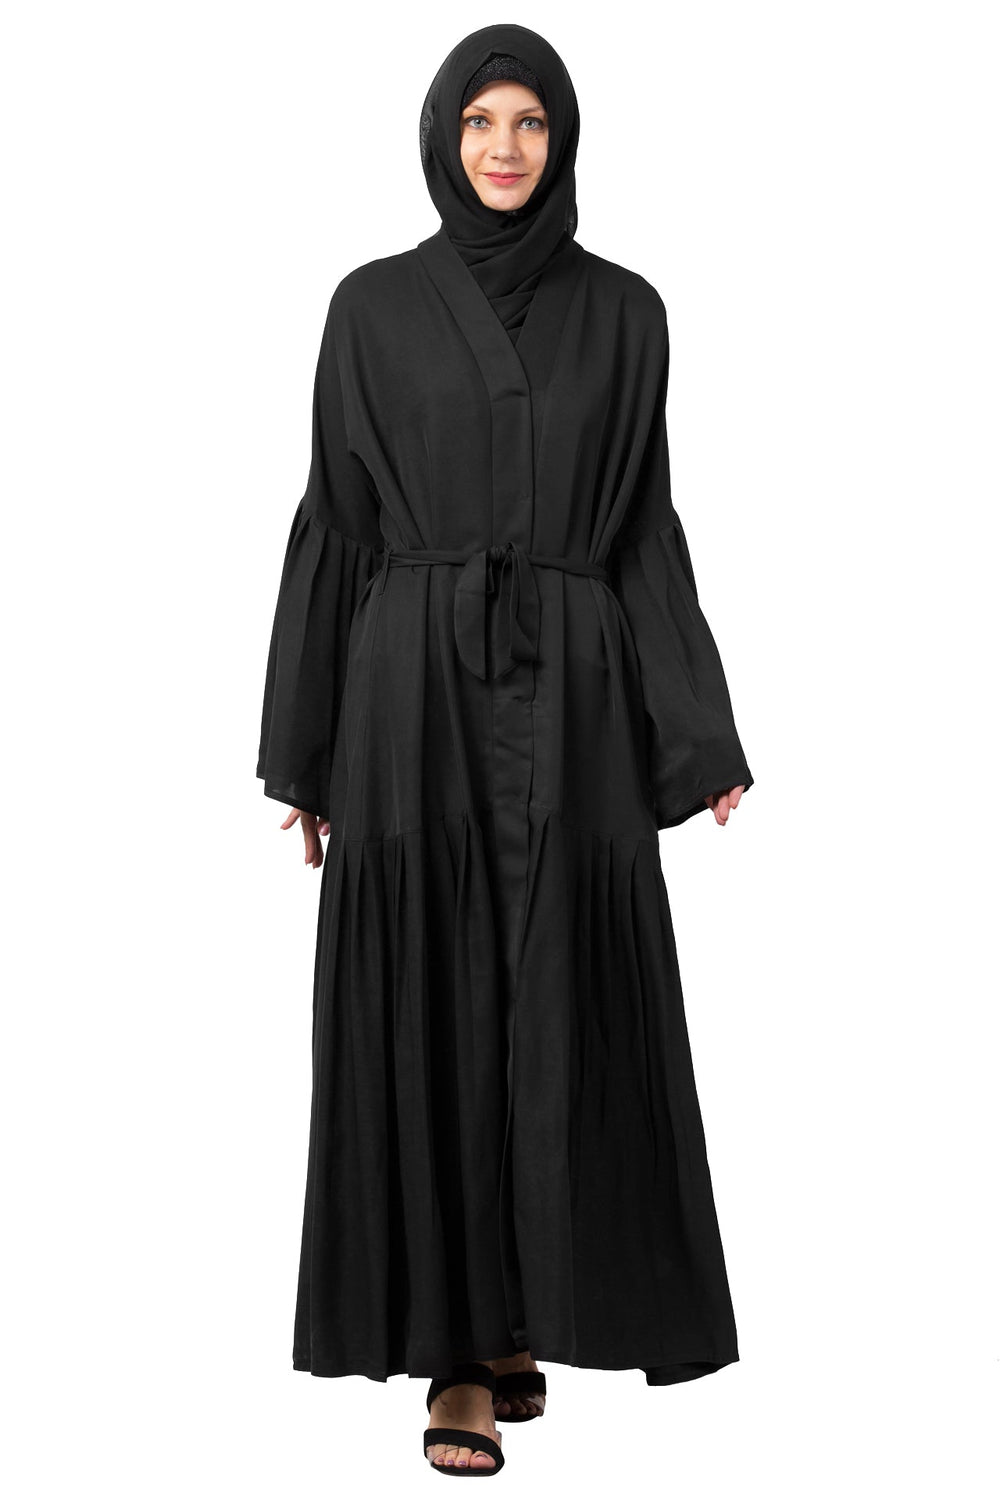 Black-Polyester-Noble-Stylized-Harmony-Abaya